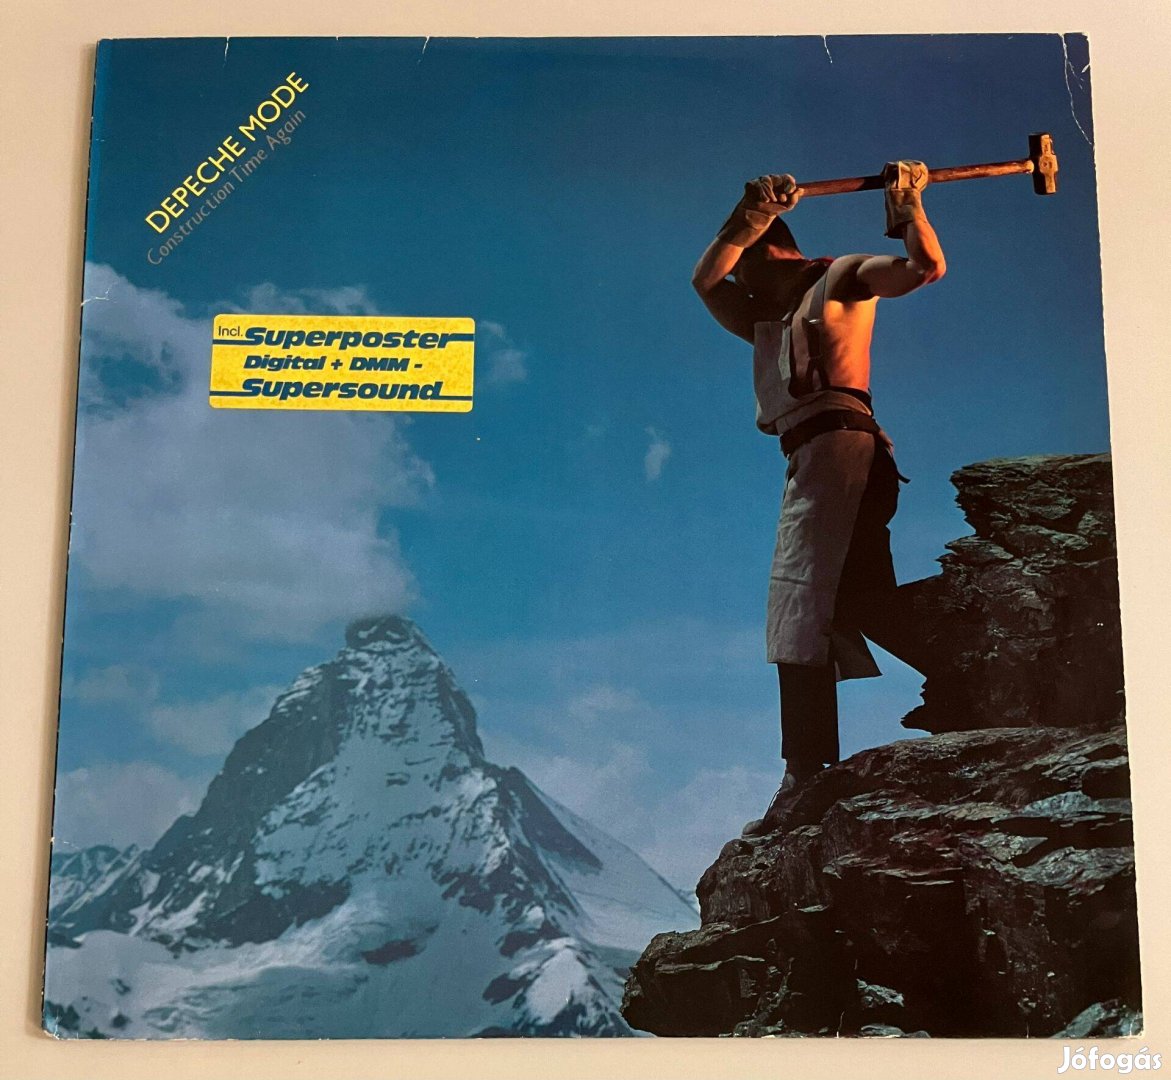 Depeche Mode - Construction Time Again (német, 1983)